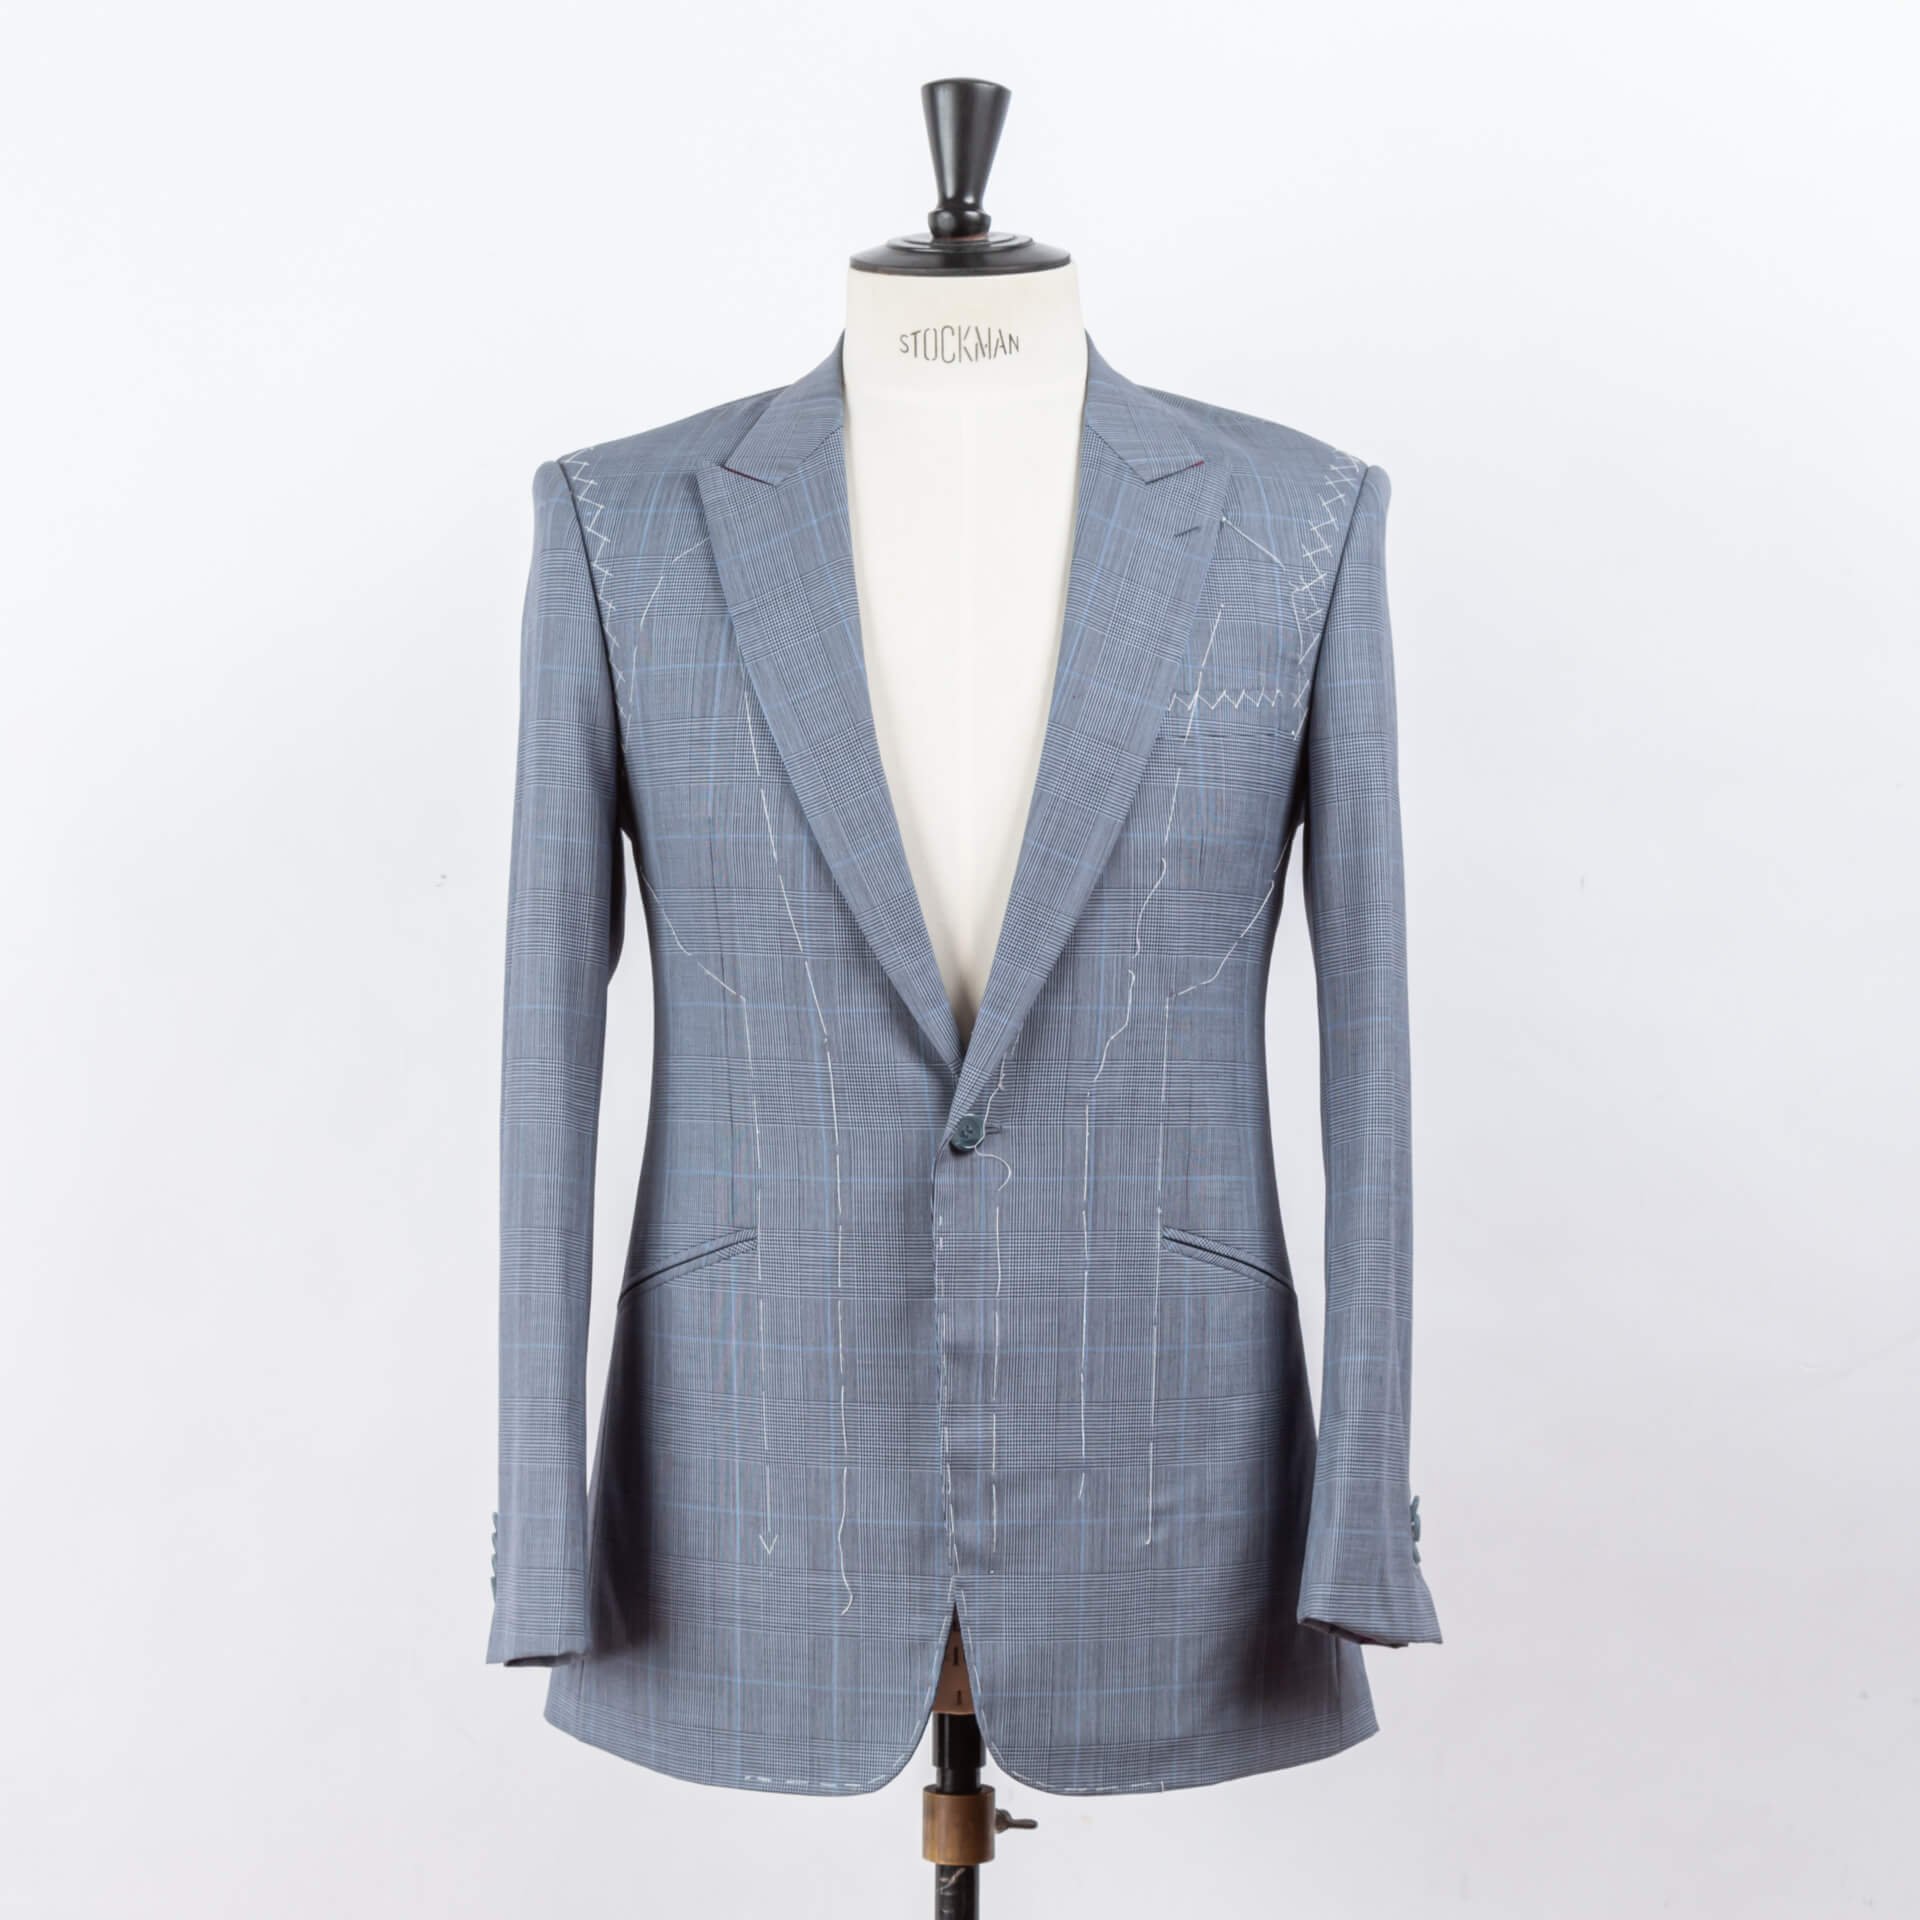 Buy Man Blue Striped Suit 2 Piece Suit,customize Suit,dinner Prom Party  Wear Suit,customize Suit,office Wear Suit,summer Suit Online in India - Etsy